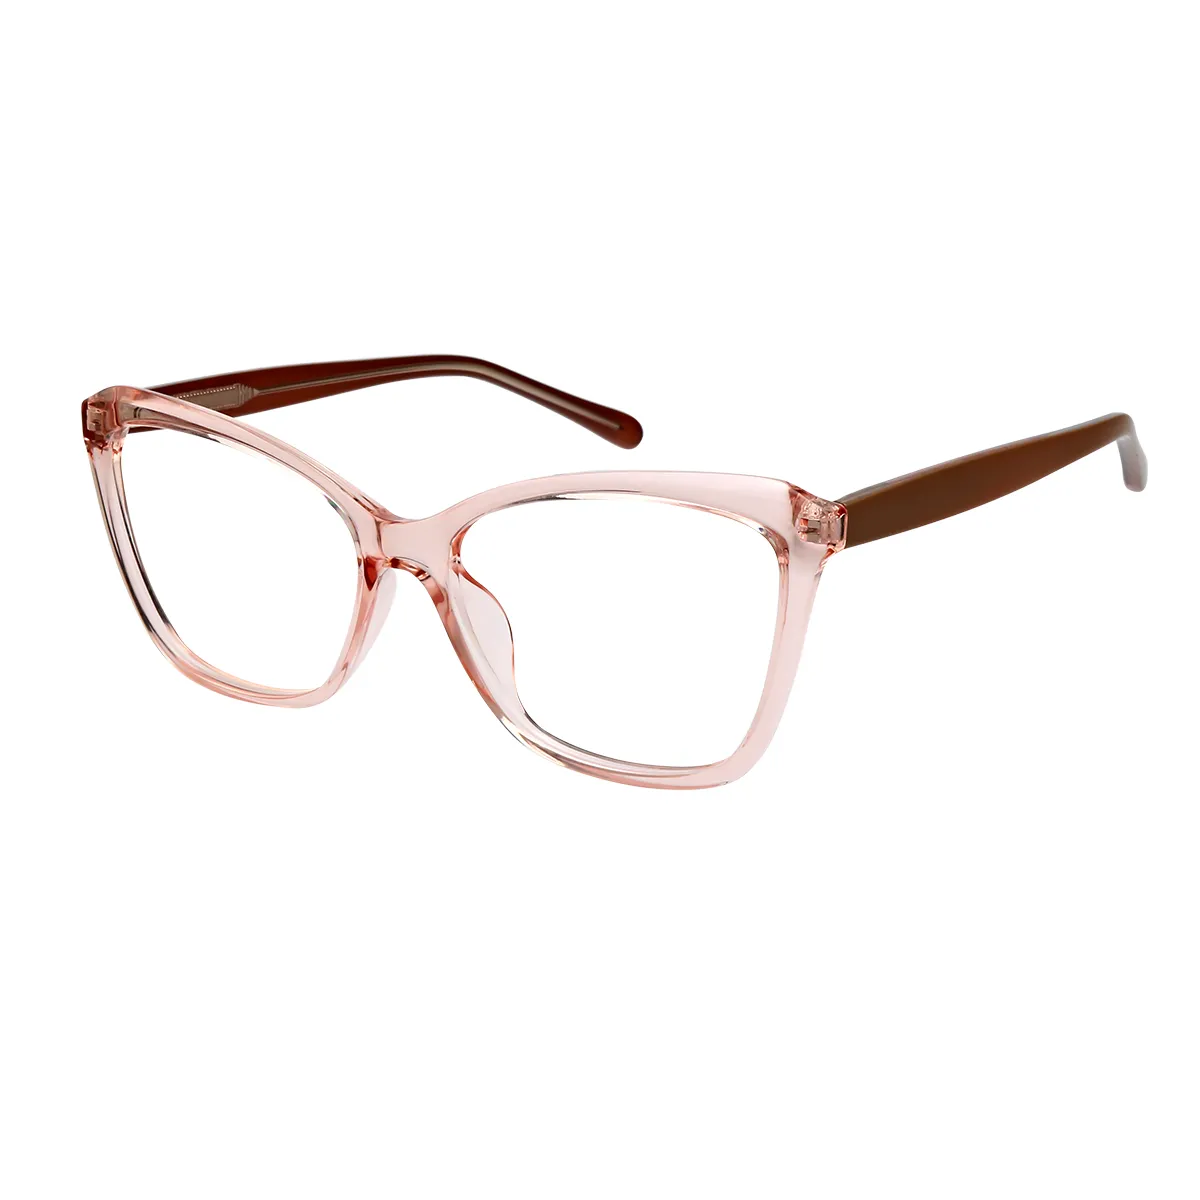 Dinah - Cat-eye  Glasses for Women